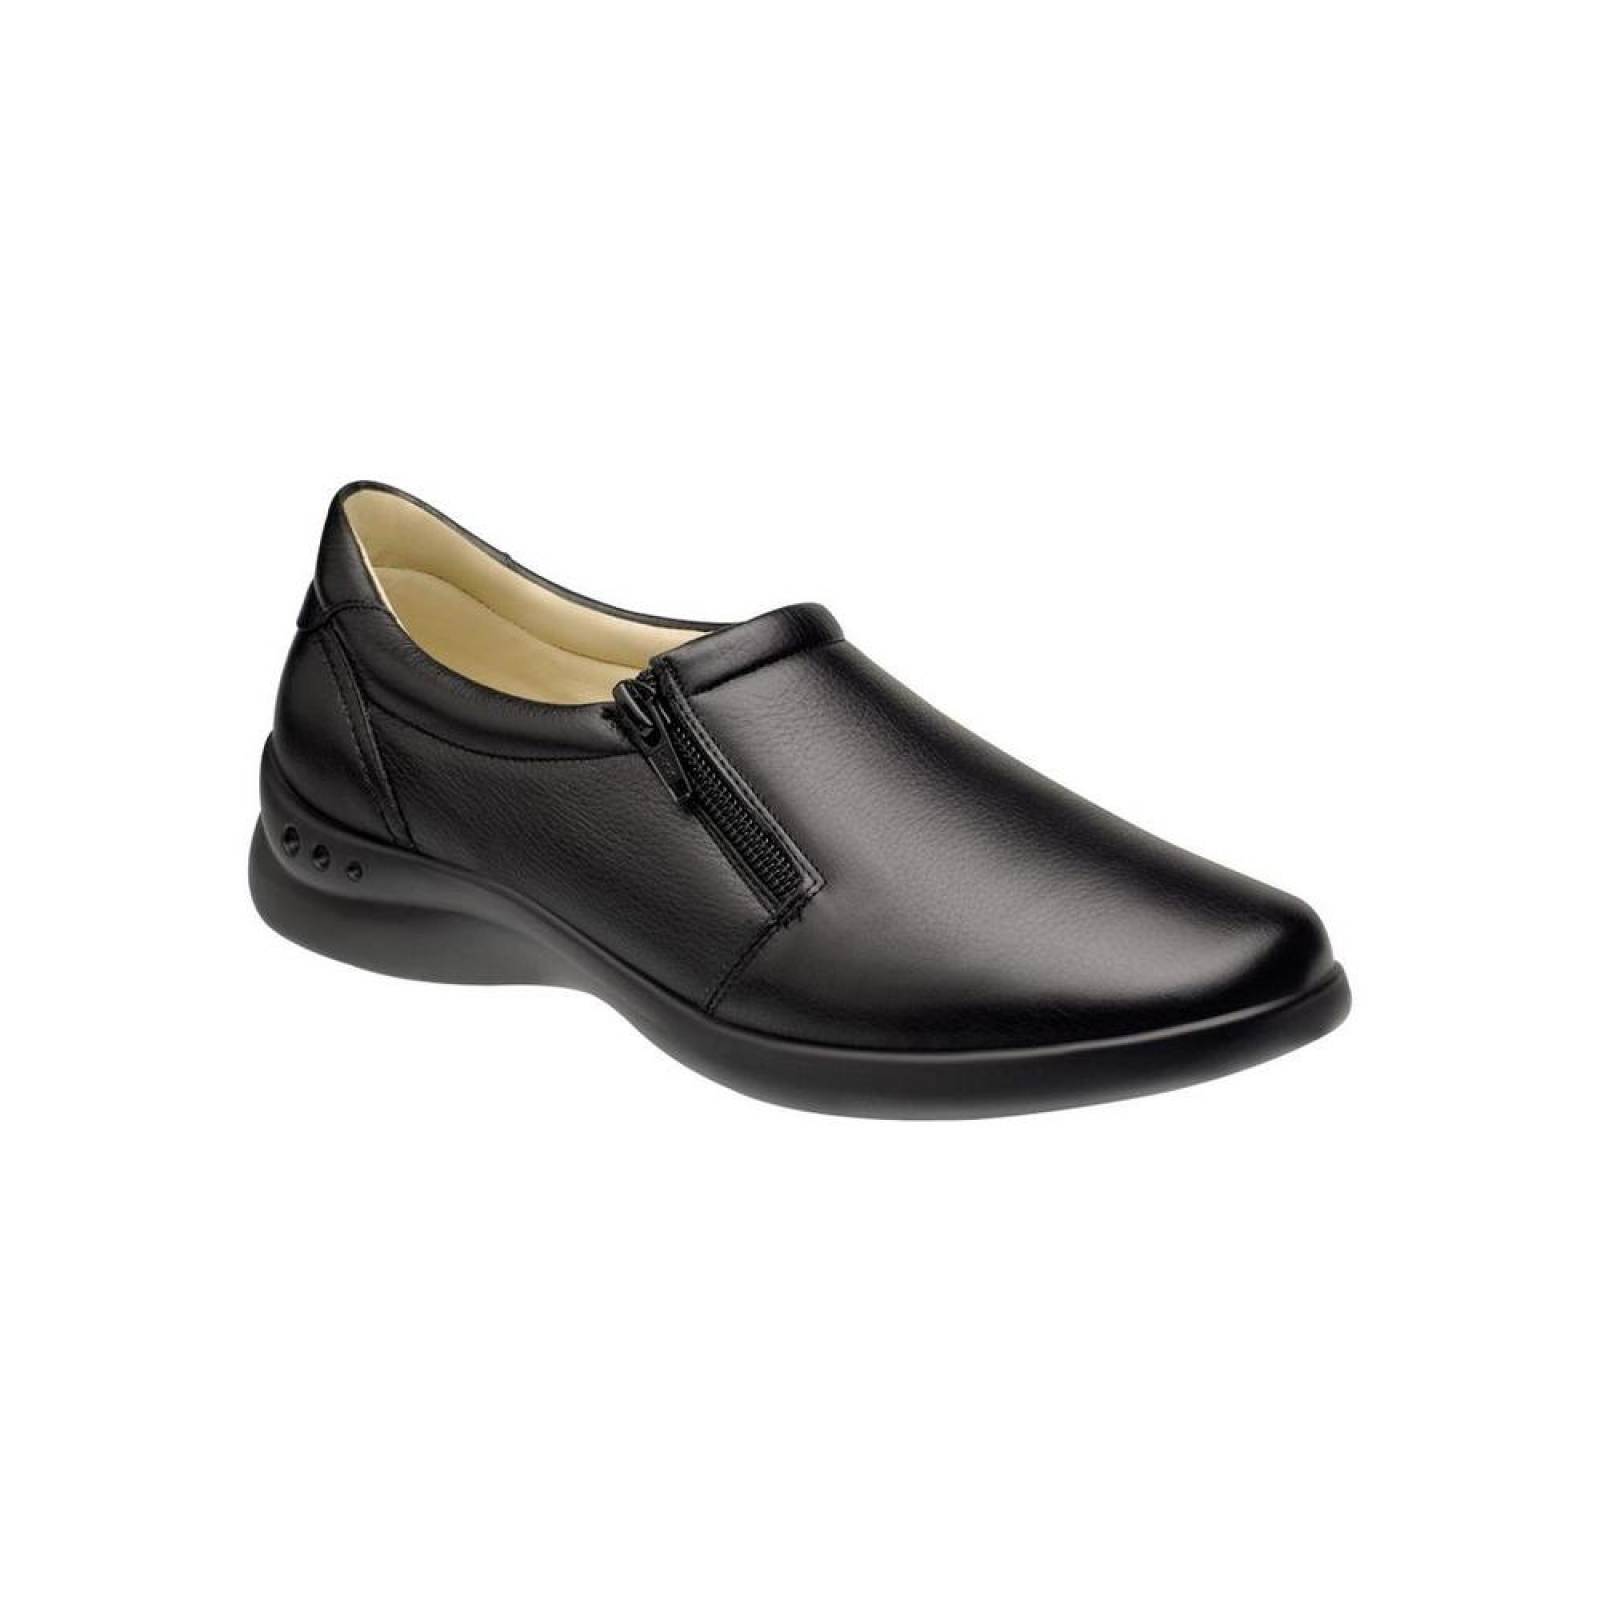 Zapato Confort Mujer Flexi Negro 02501200 Piel 